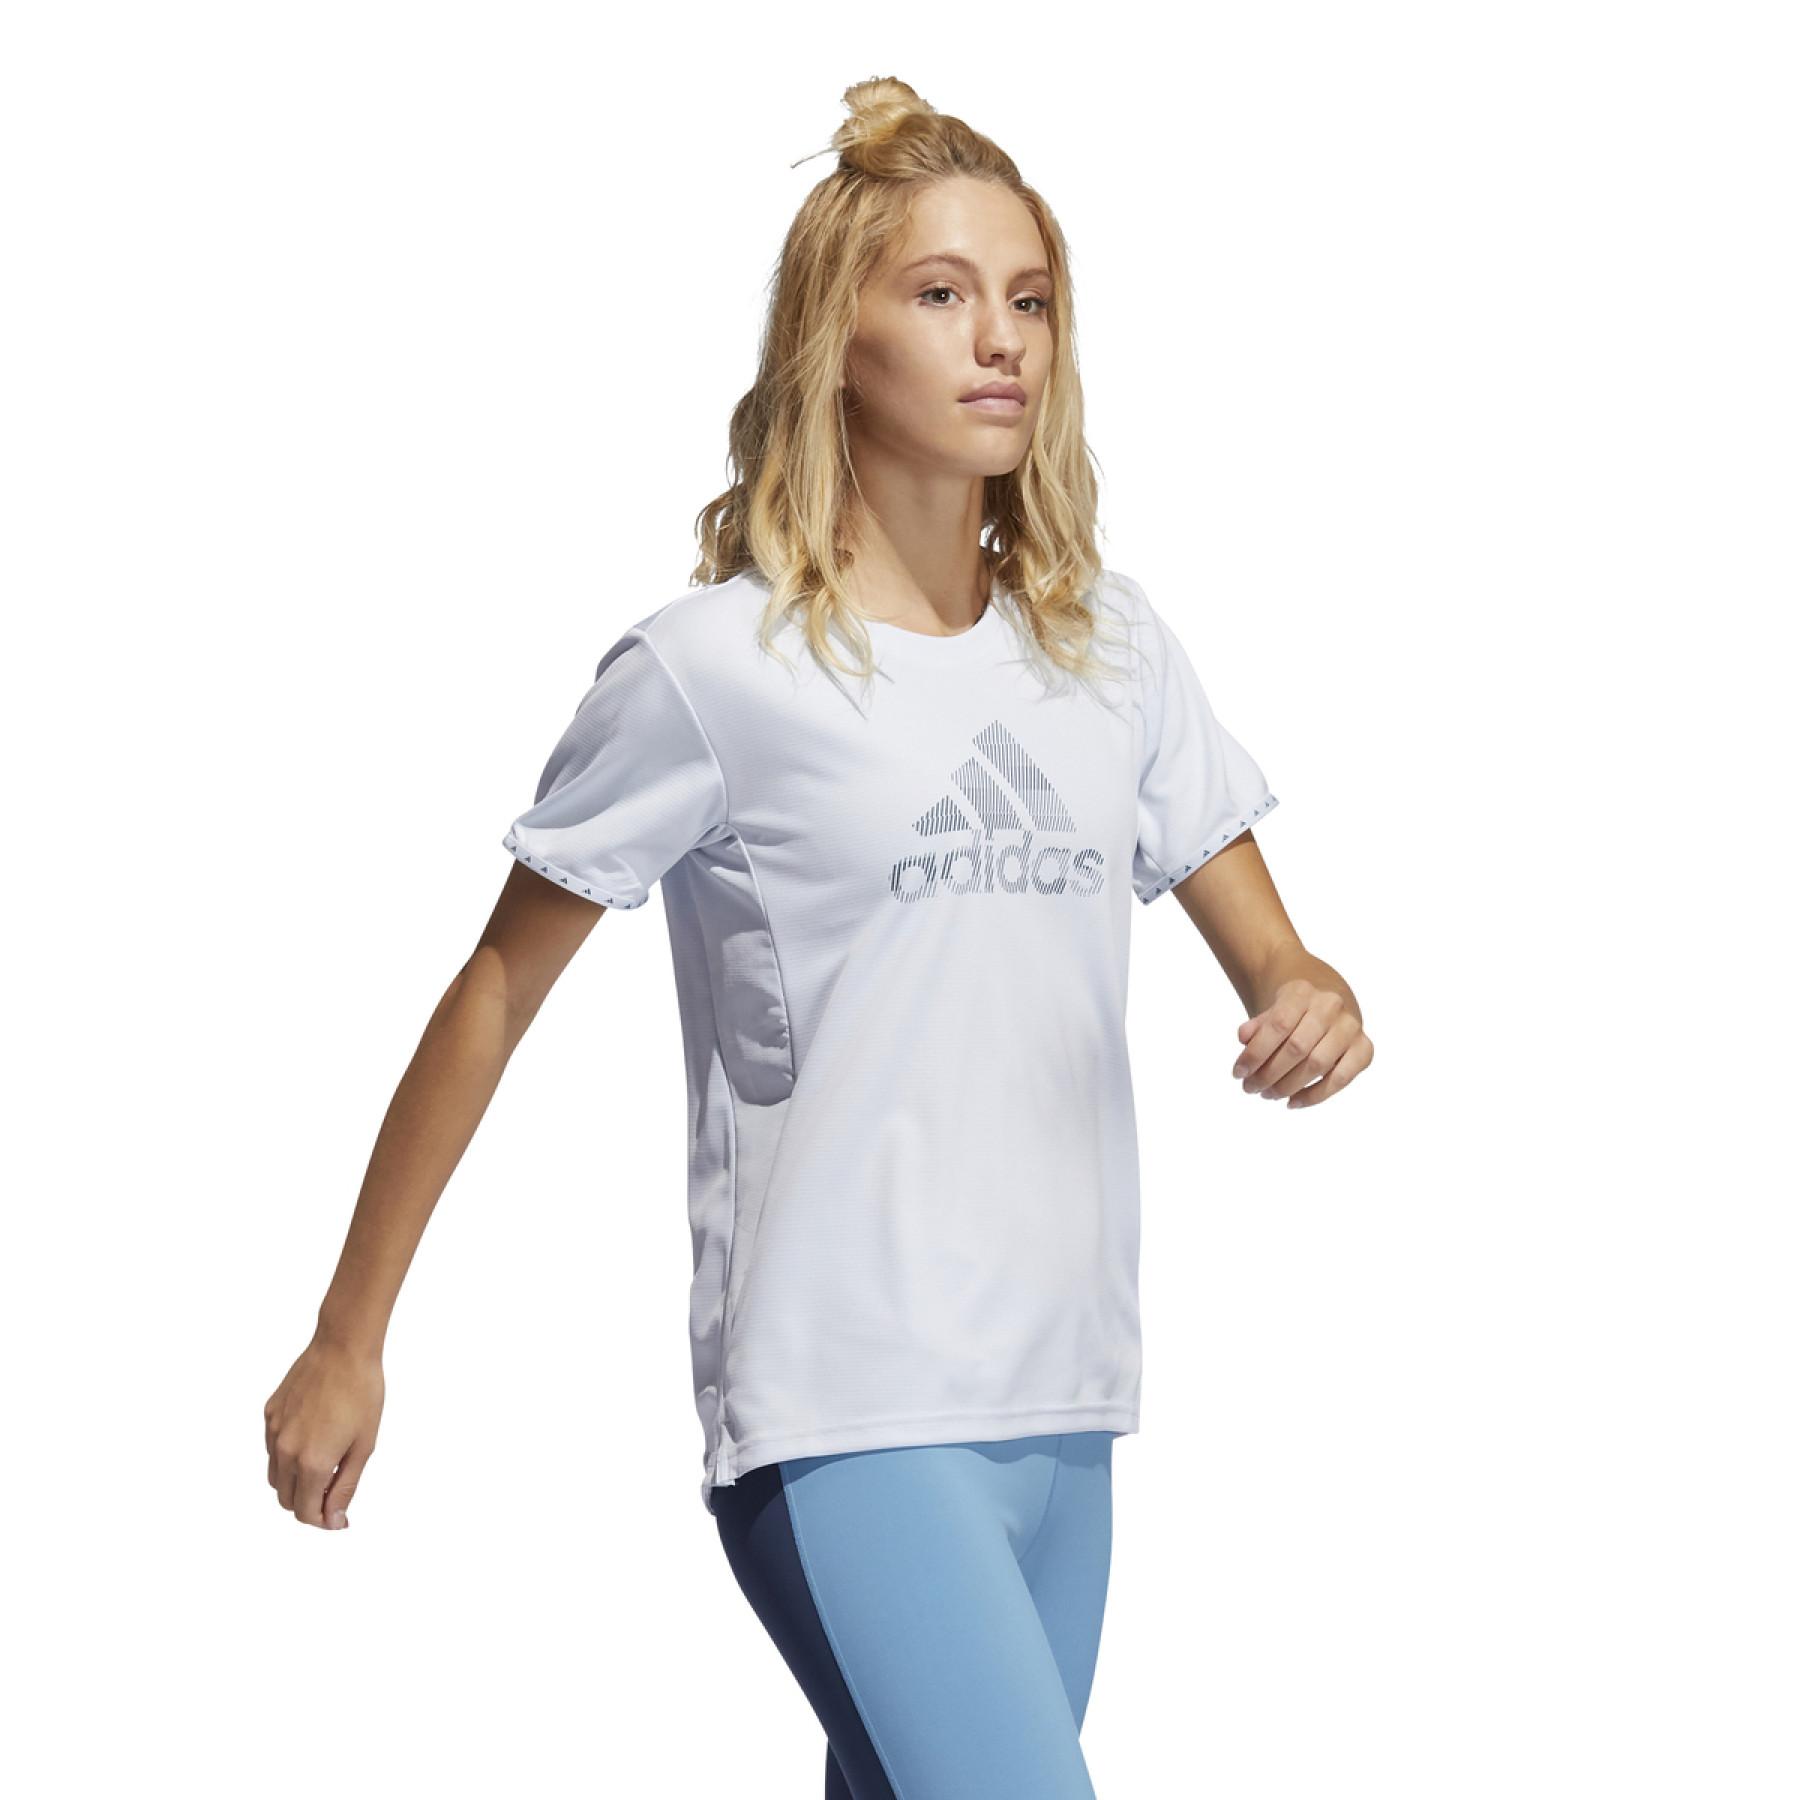 Camiseta feminina adidas Badge of Sport Necessi-Tee